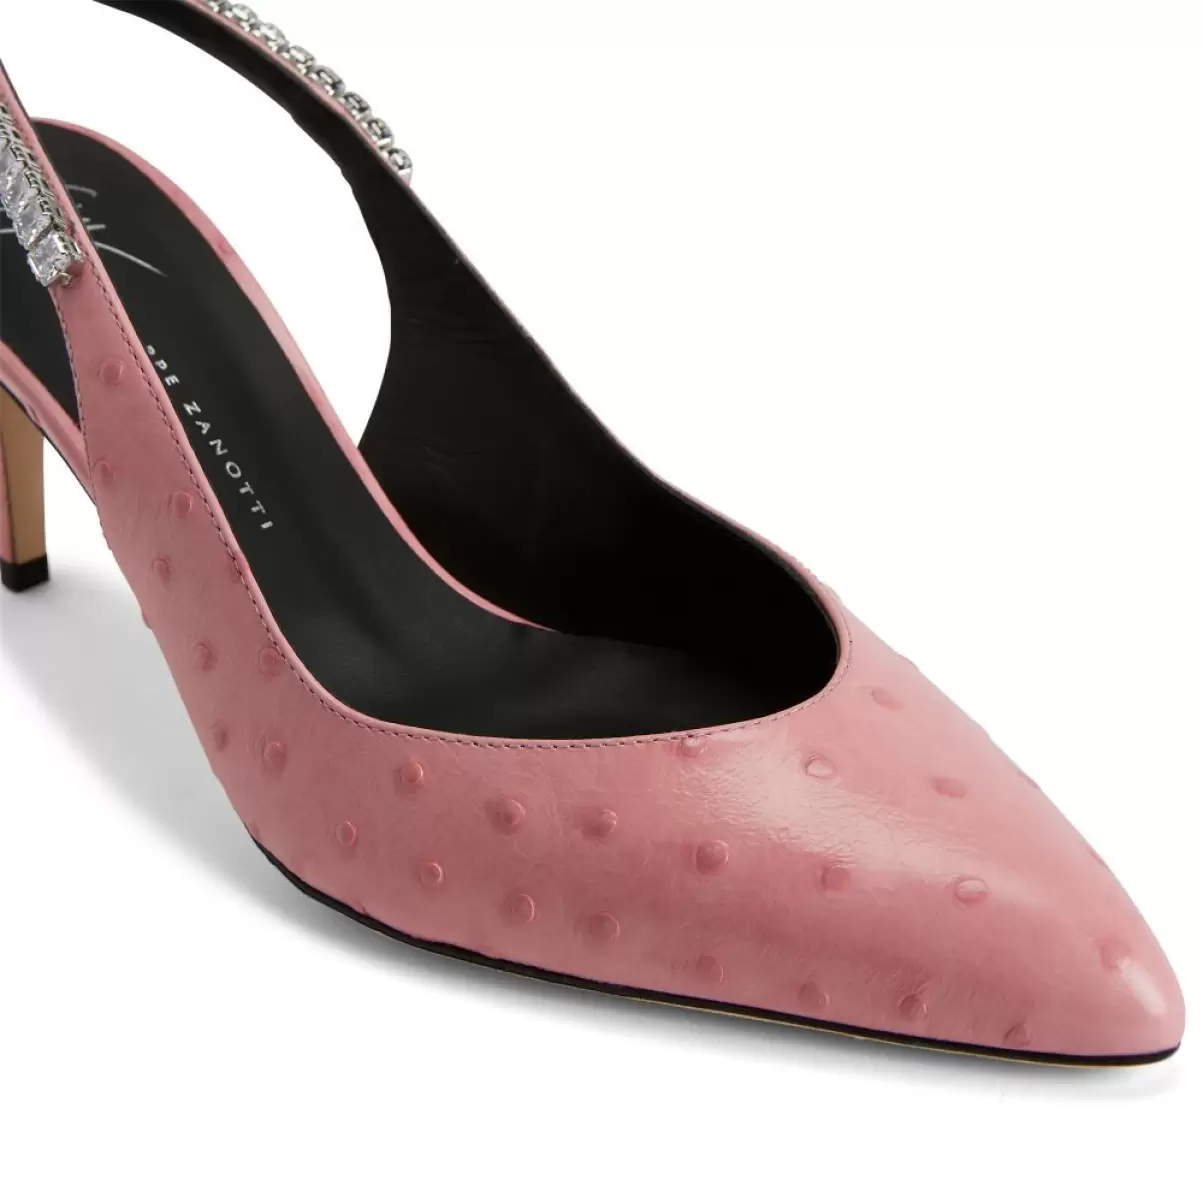 Rachyl Zapatos De Salón Giuseppe Zanotti Mujer Rosa - 4